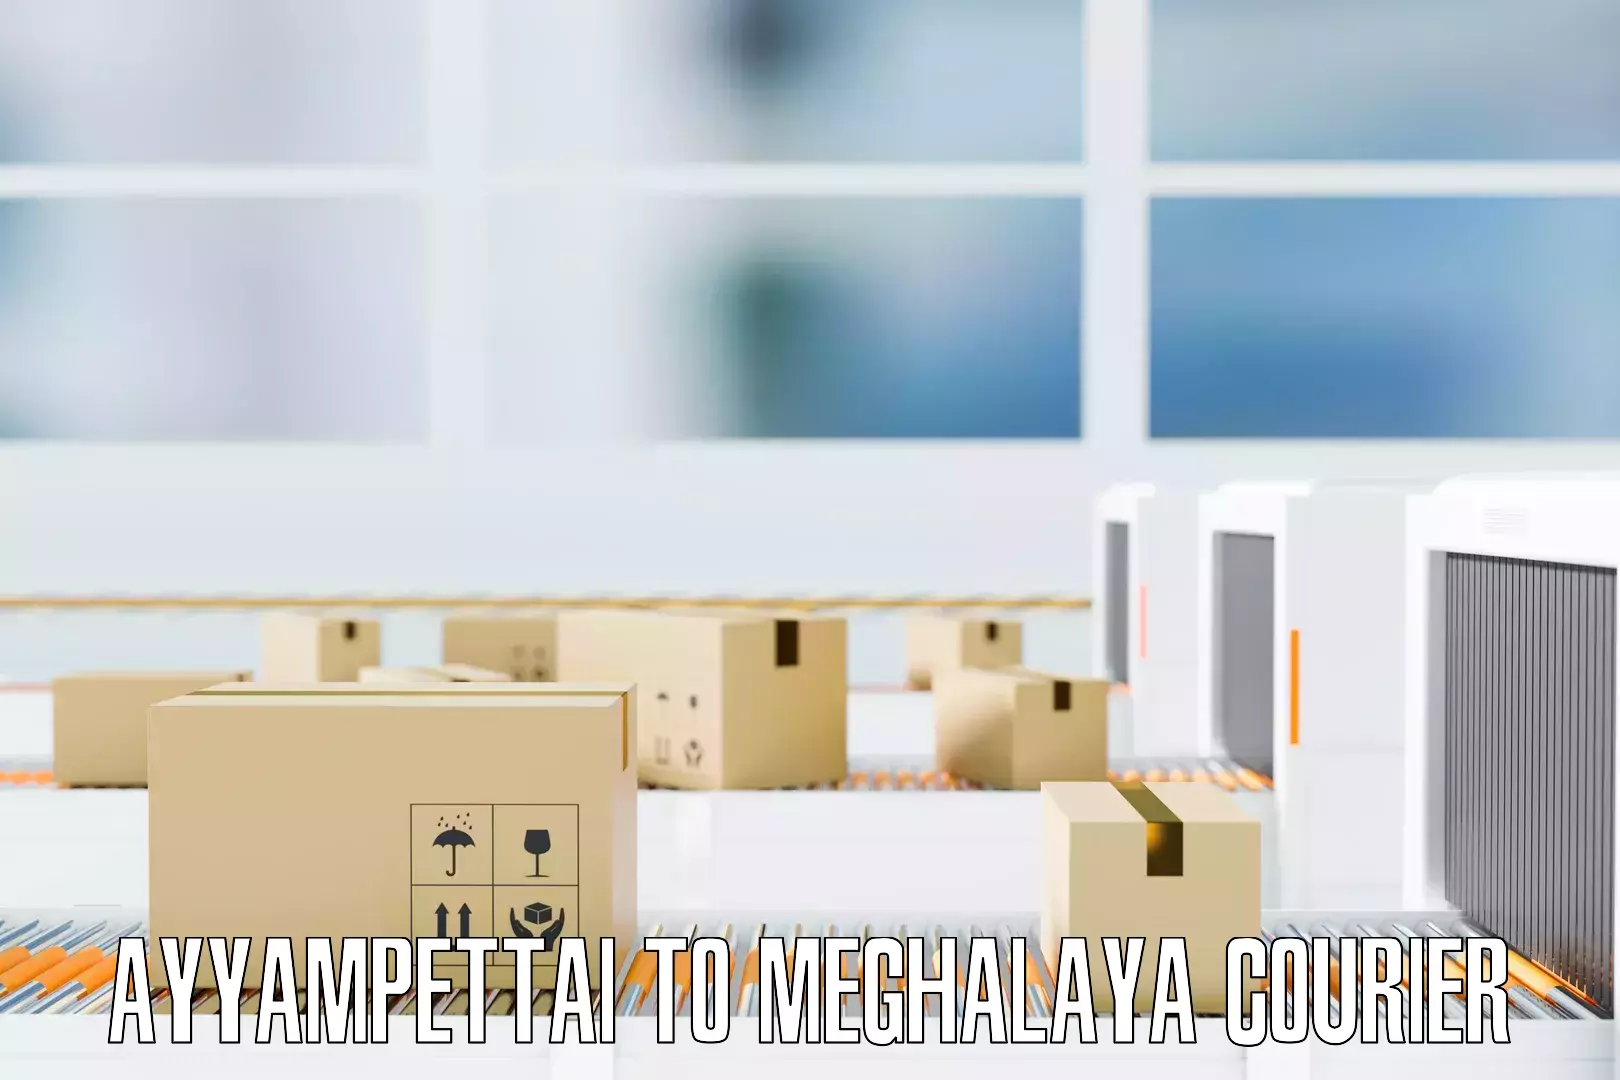 Furniture transport specialists Ayyampettai to Meghalaya